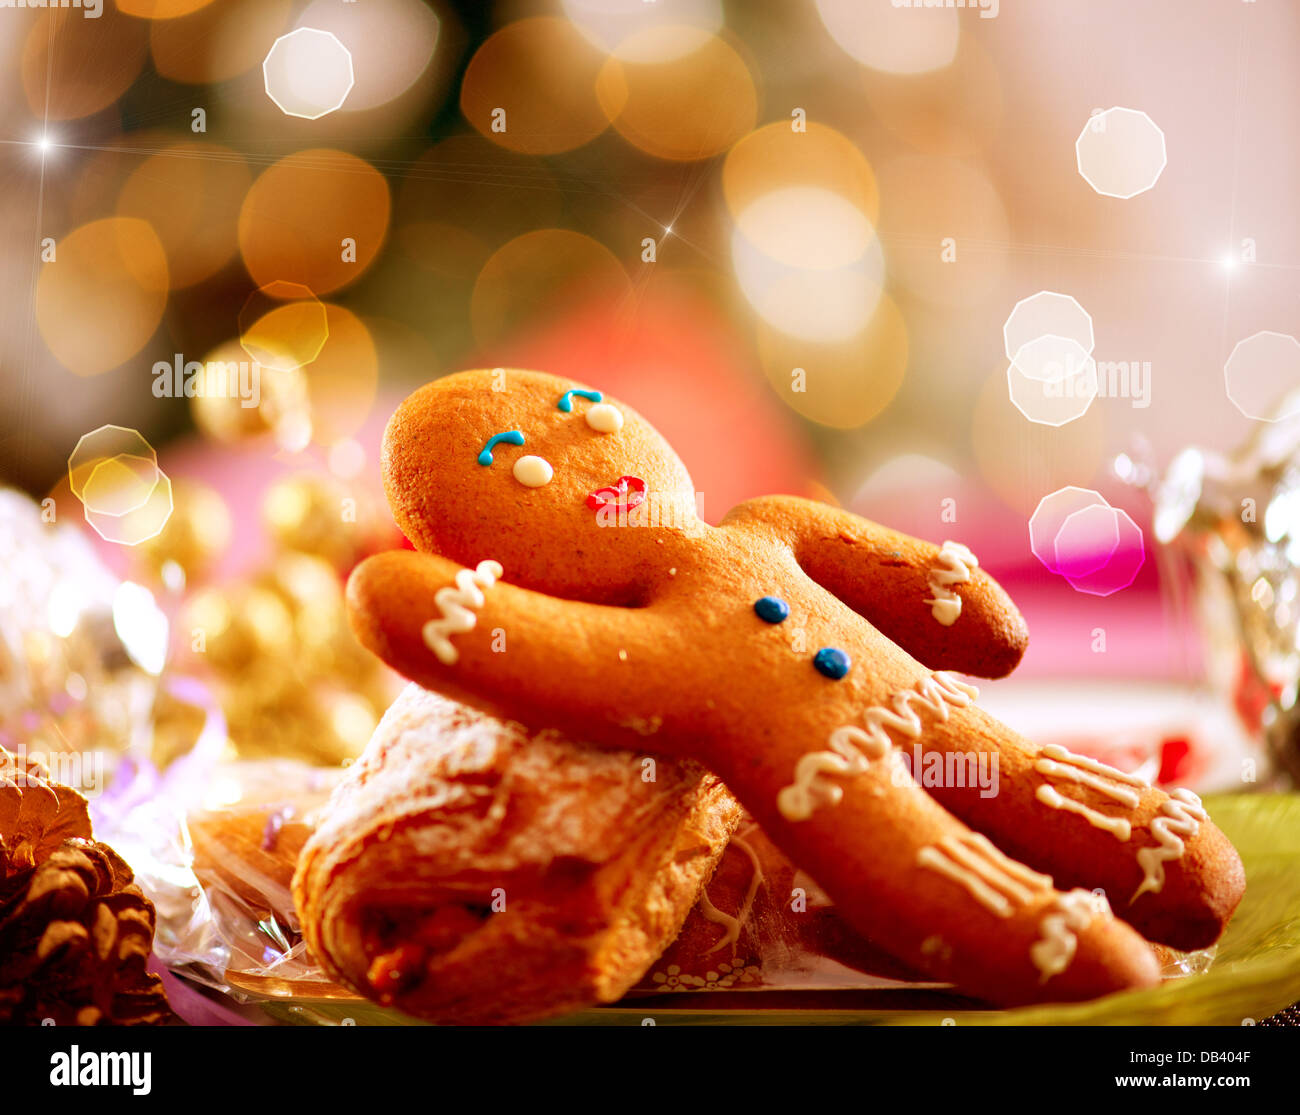 Gingerbread Man. Christmas Holiday Food. Christmas Table Setting Stock Photo